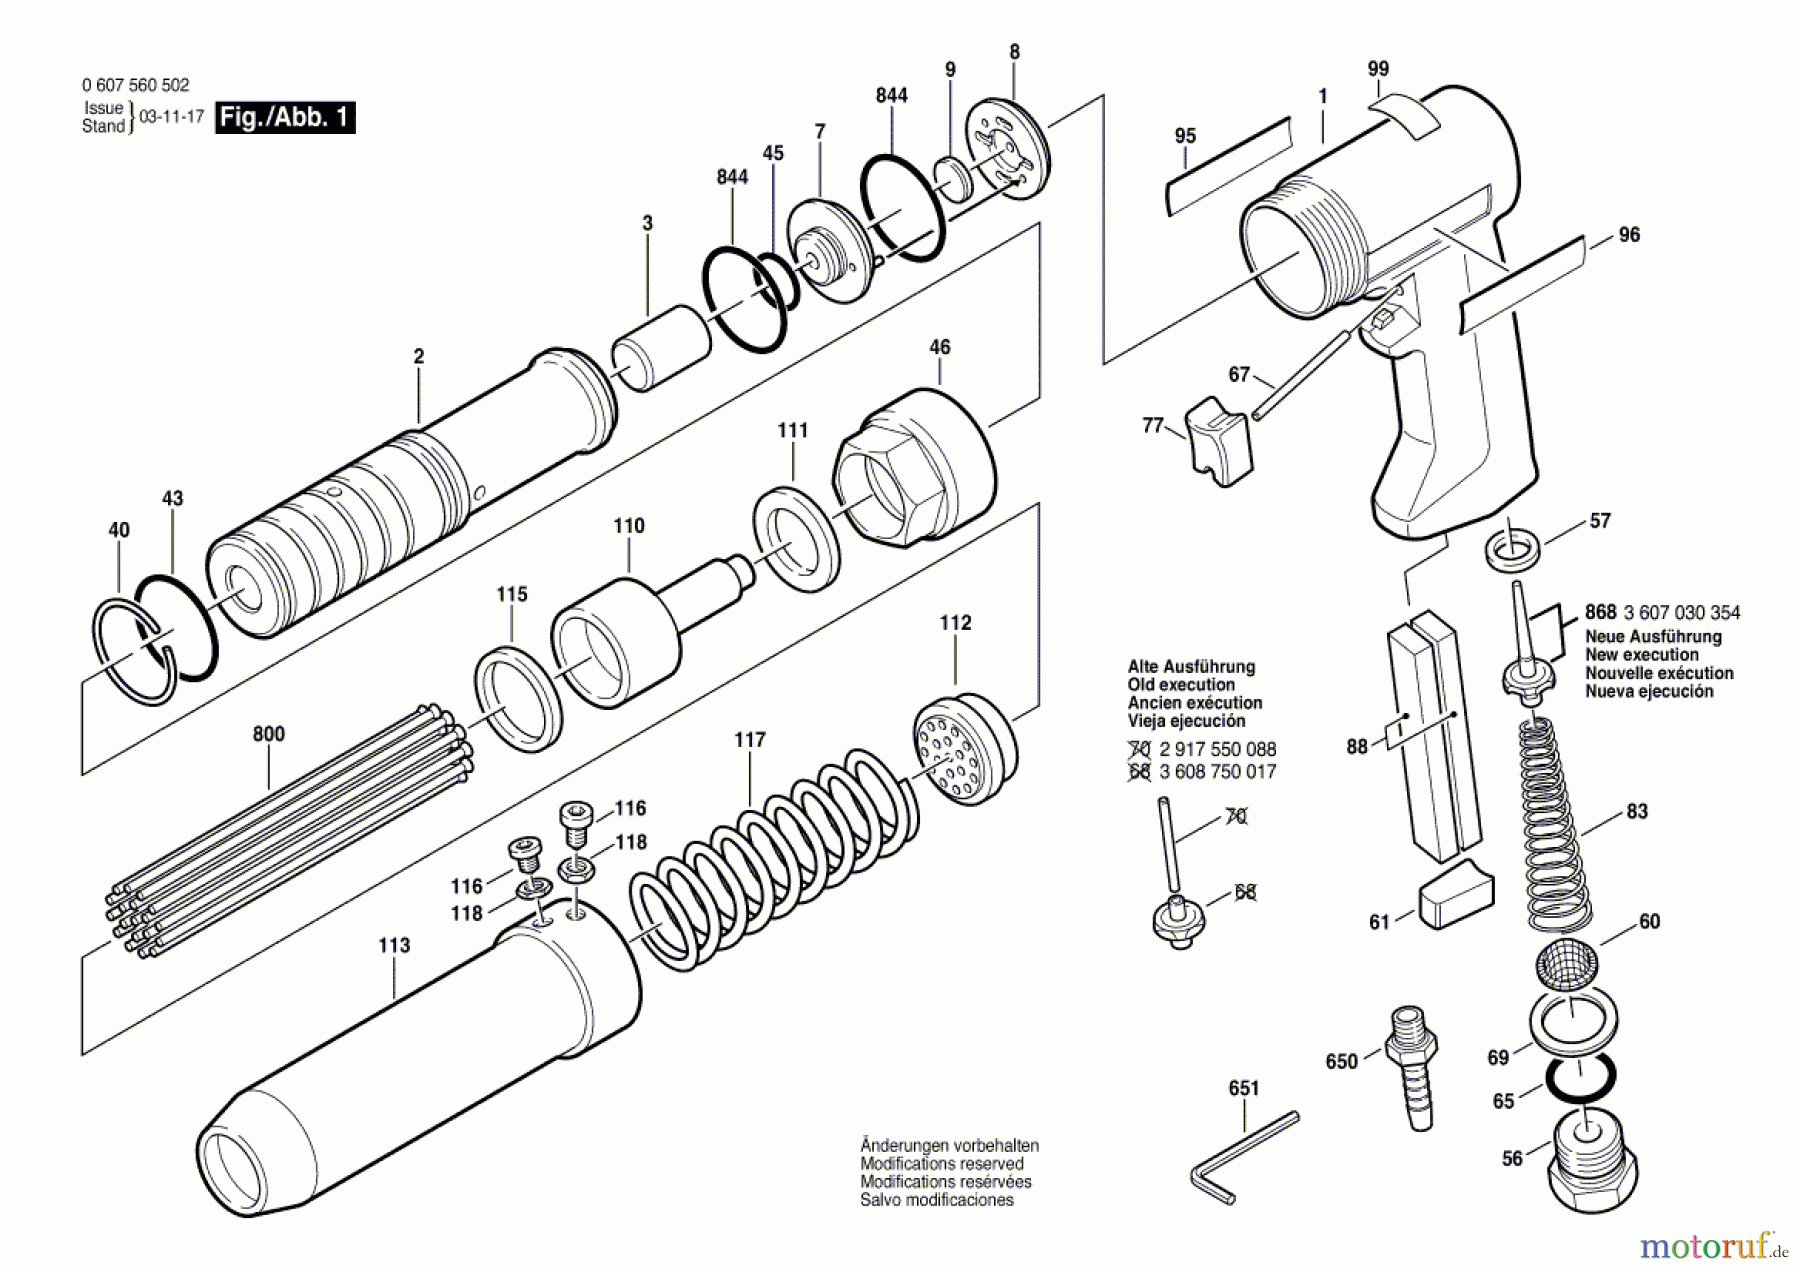  Bosch Werkzeug Pw-Nadelabklopfer ---- Seite 1